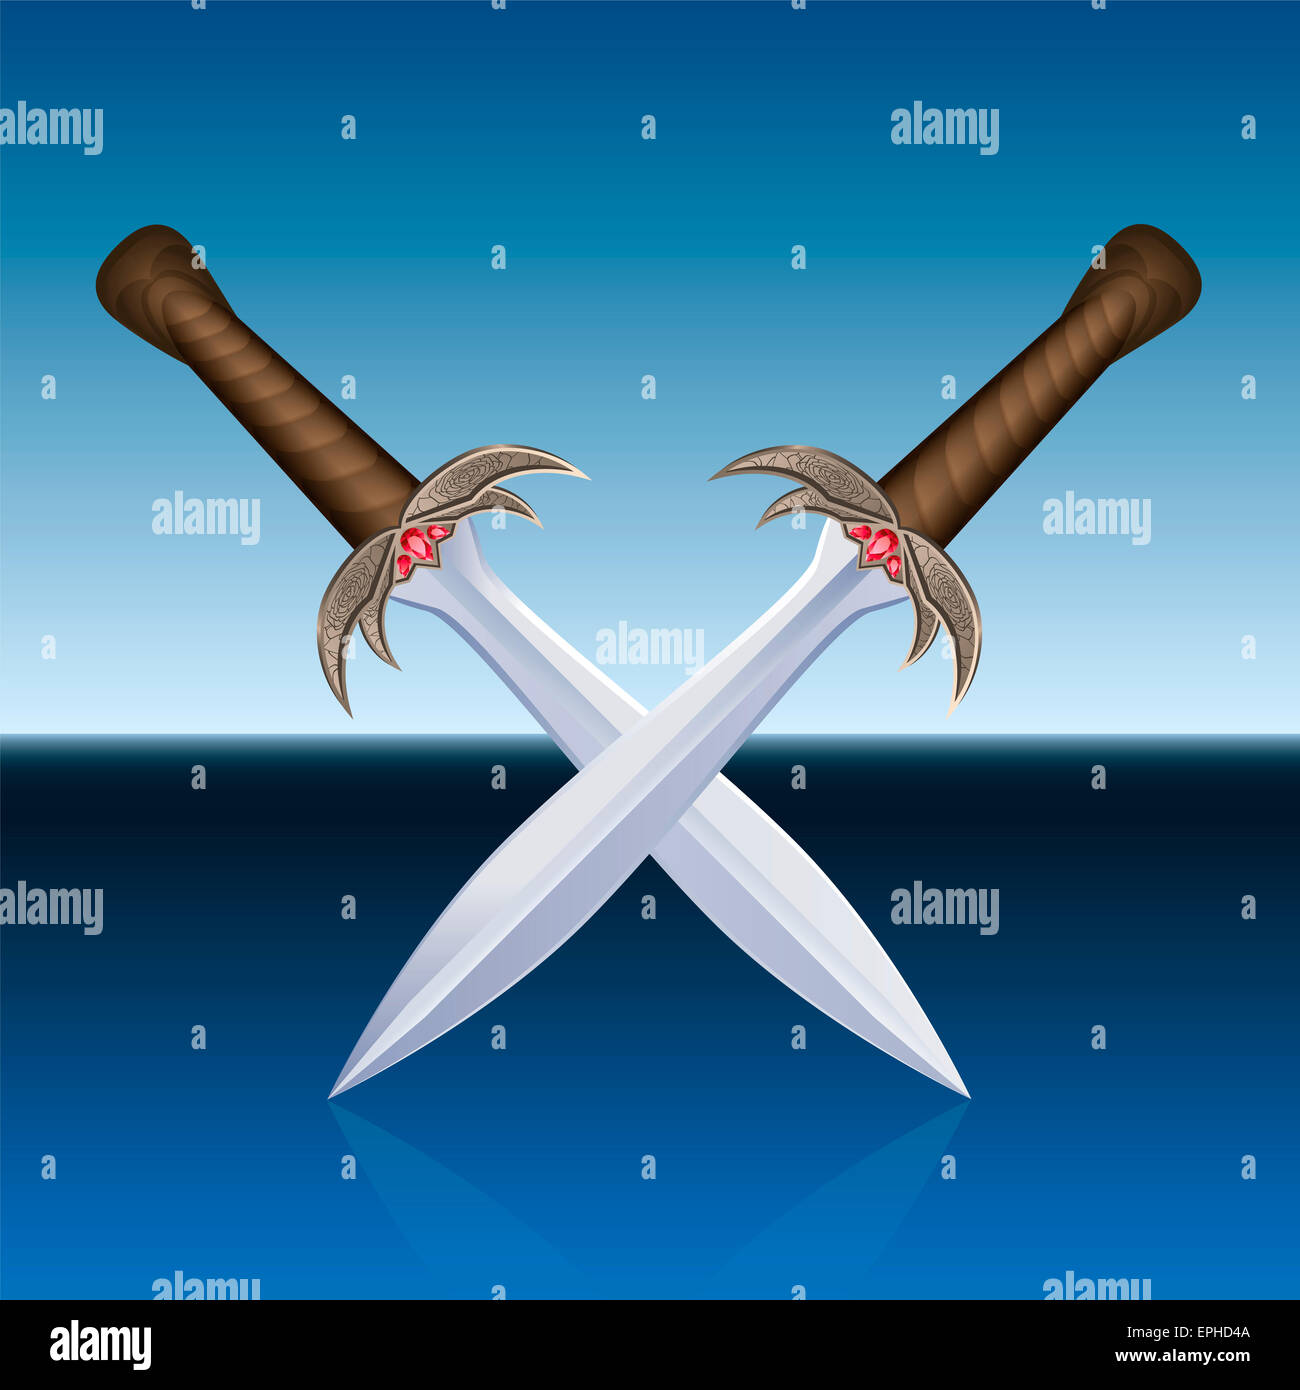 Zwei gekreuzte Piraten Schwerter. Abbildung auf blaue Meer Hintergrund. Stockfoto